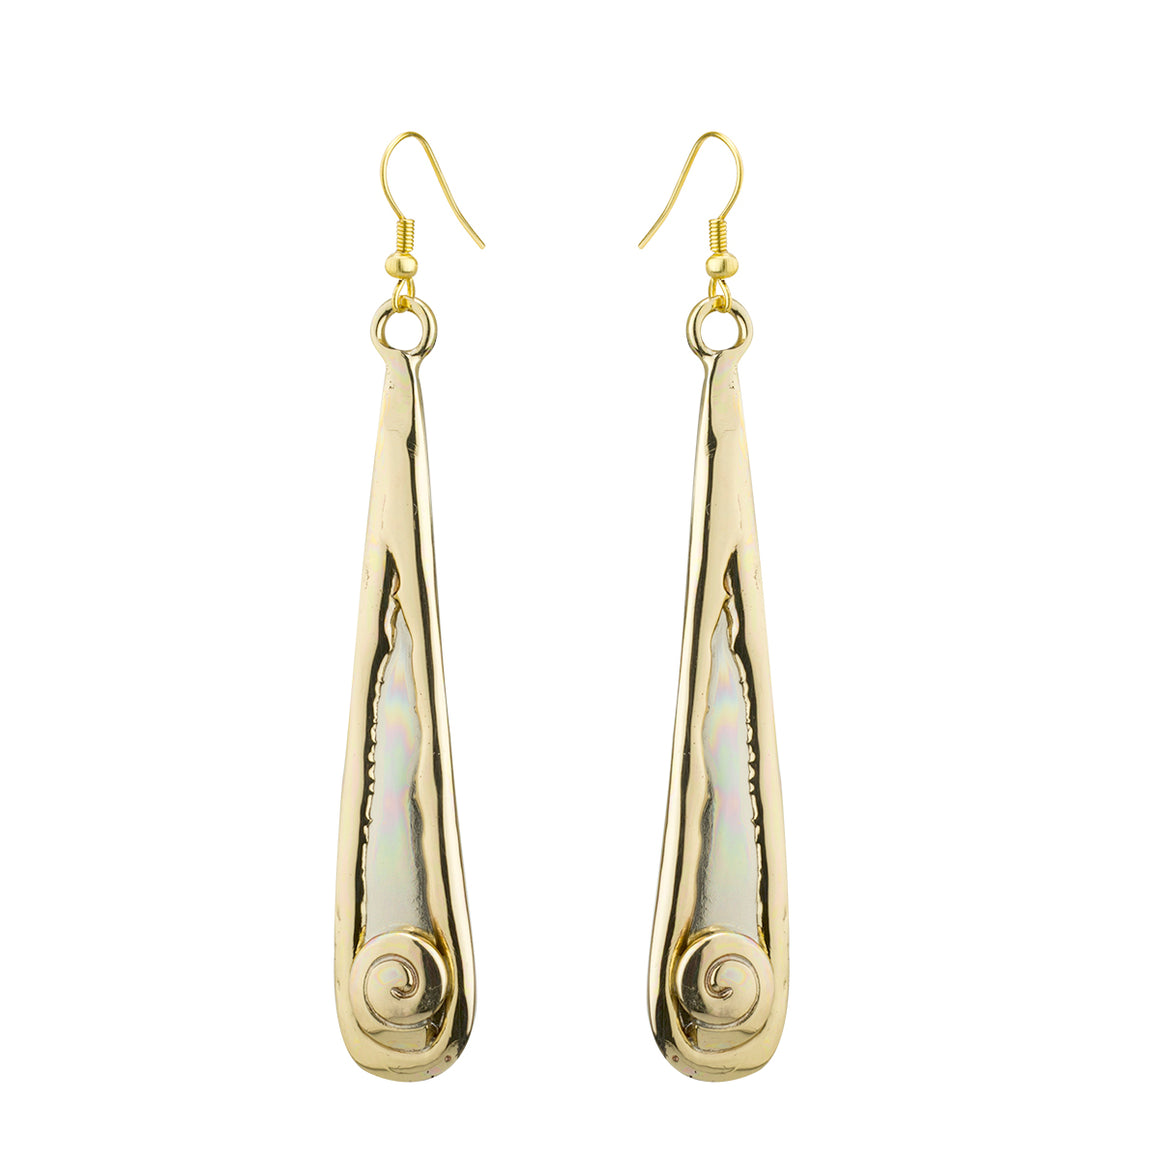 Two Toned Silver Spiral Drop Earrings by Grange Celtic Jewellery.